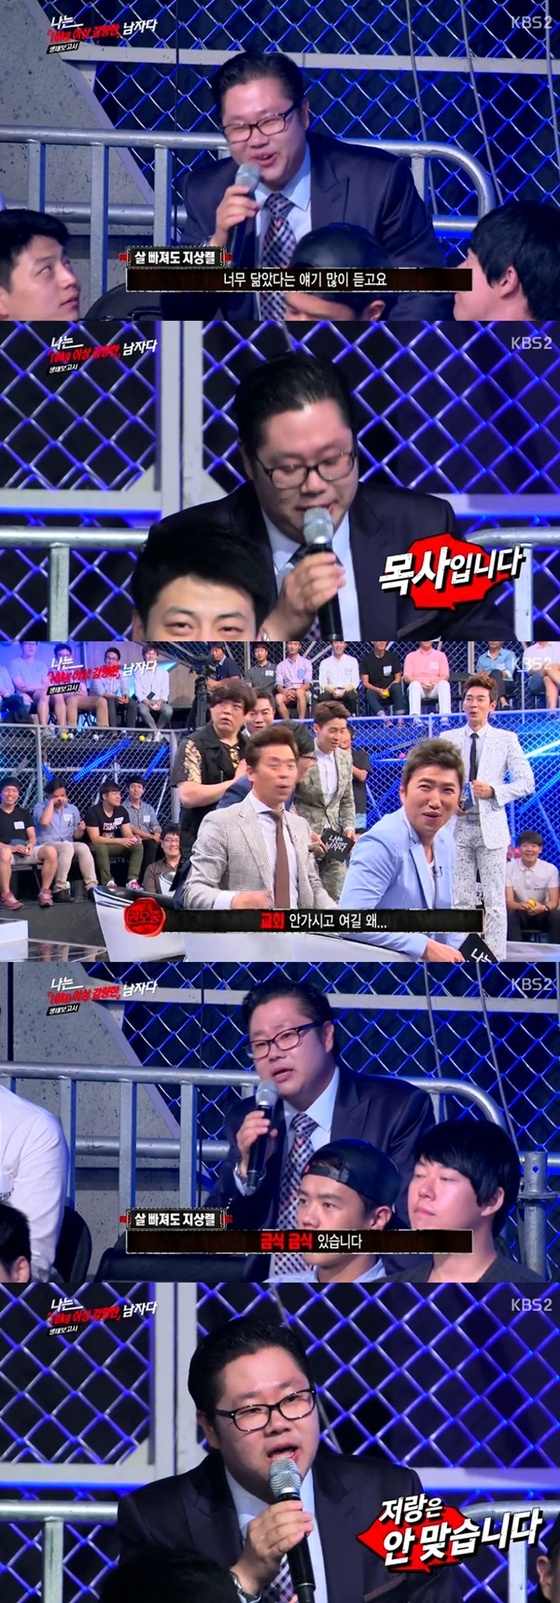 22일 밤 11시 방송된 '나는 남자다'에 개그맨 지상렬을 닮은 남성 관객이 등장했다.© KBS2 '나는 남자다' 방송 캡처